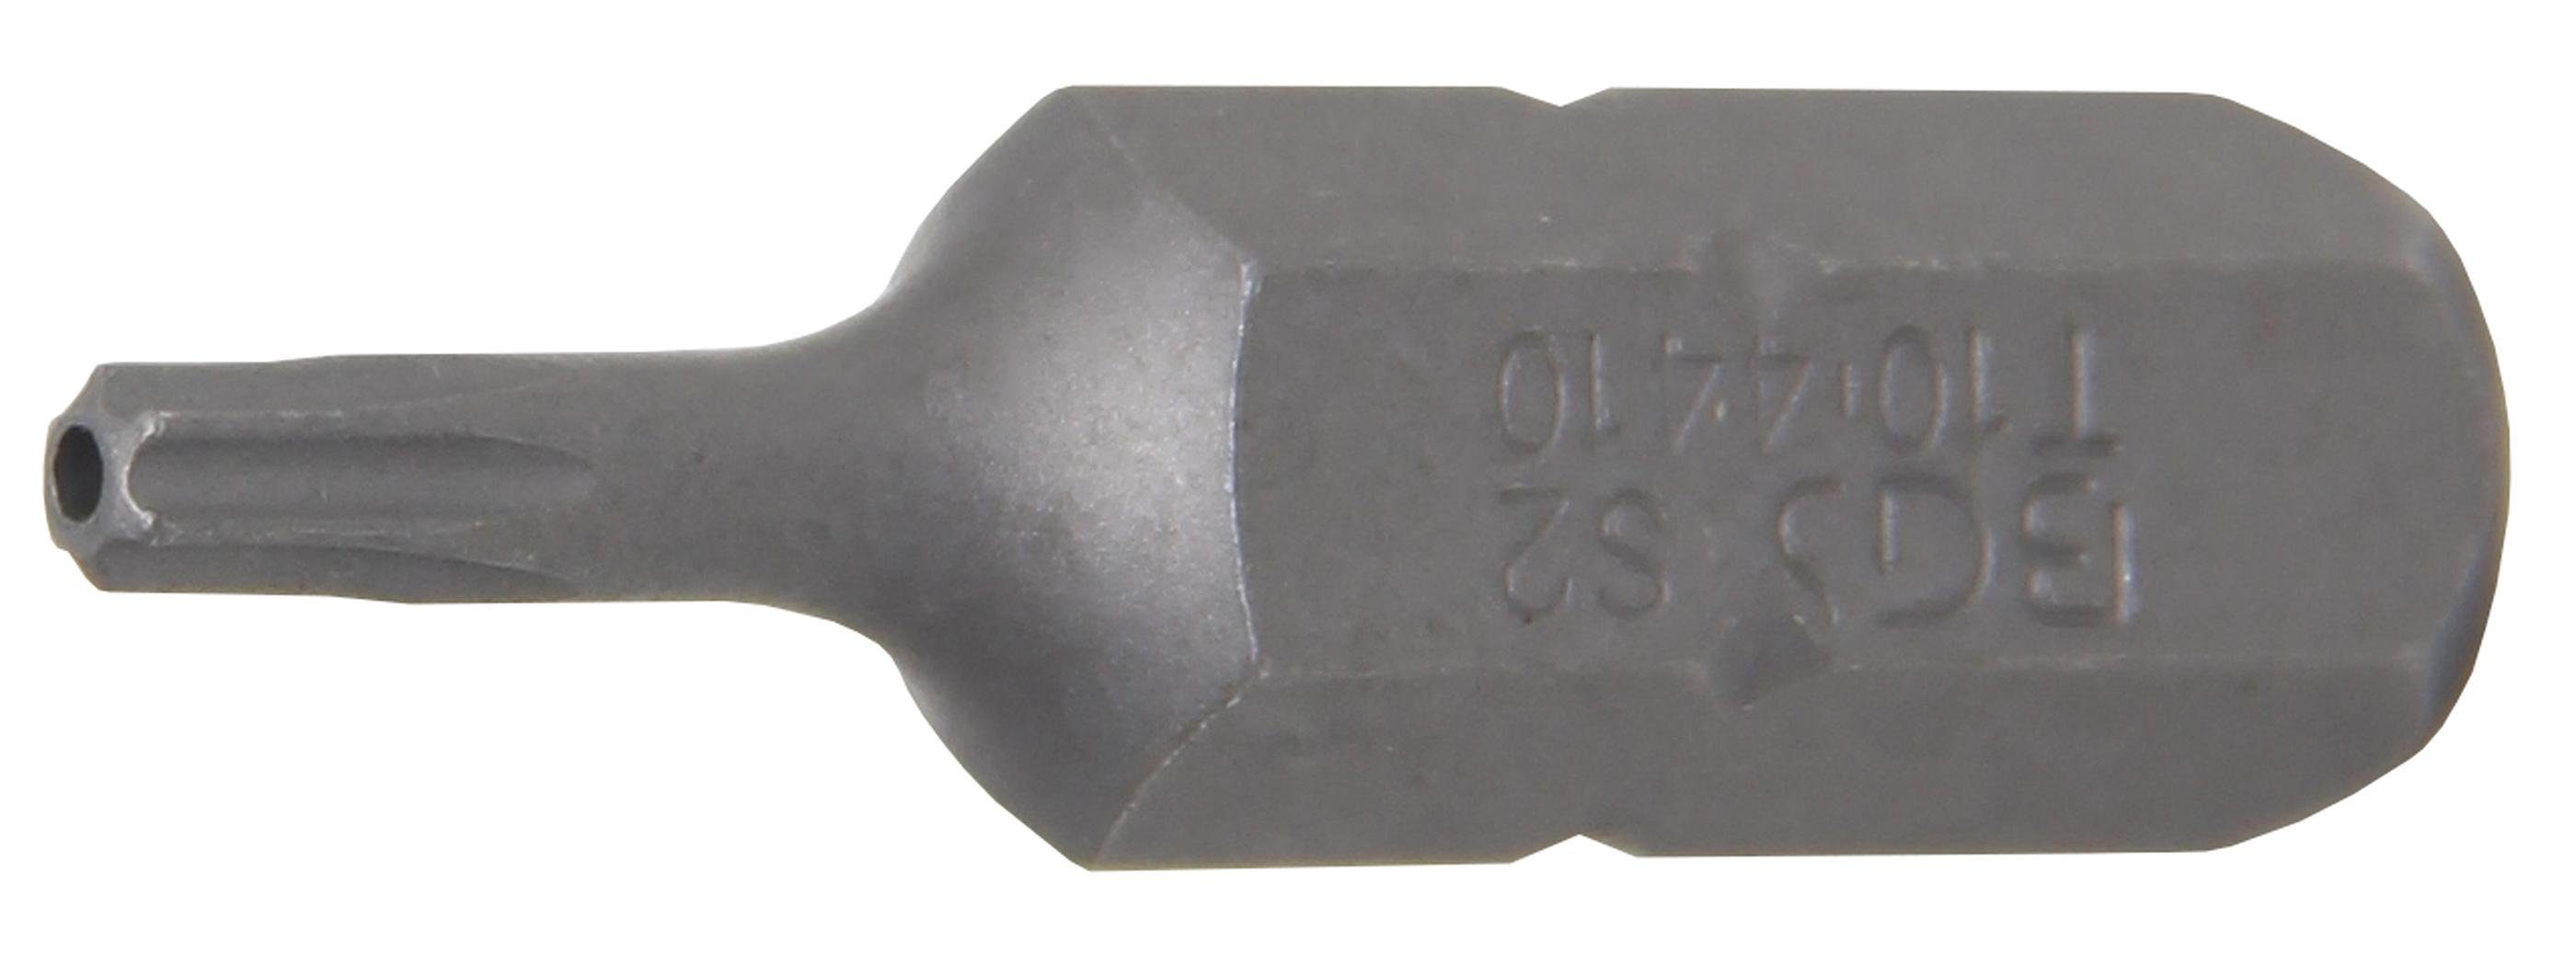 BGS technic Bit-Schraubendreher Bit, Länge 30 mm, Antrieb Außensechskant 8 mm (5/16), T-Profil (für Torx) mit Bohrung T10